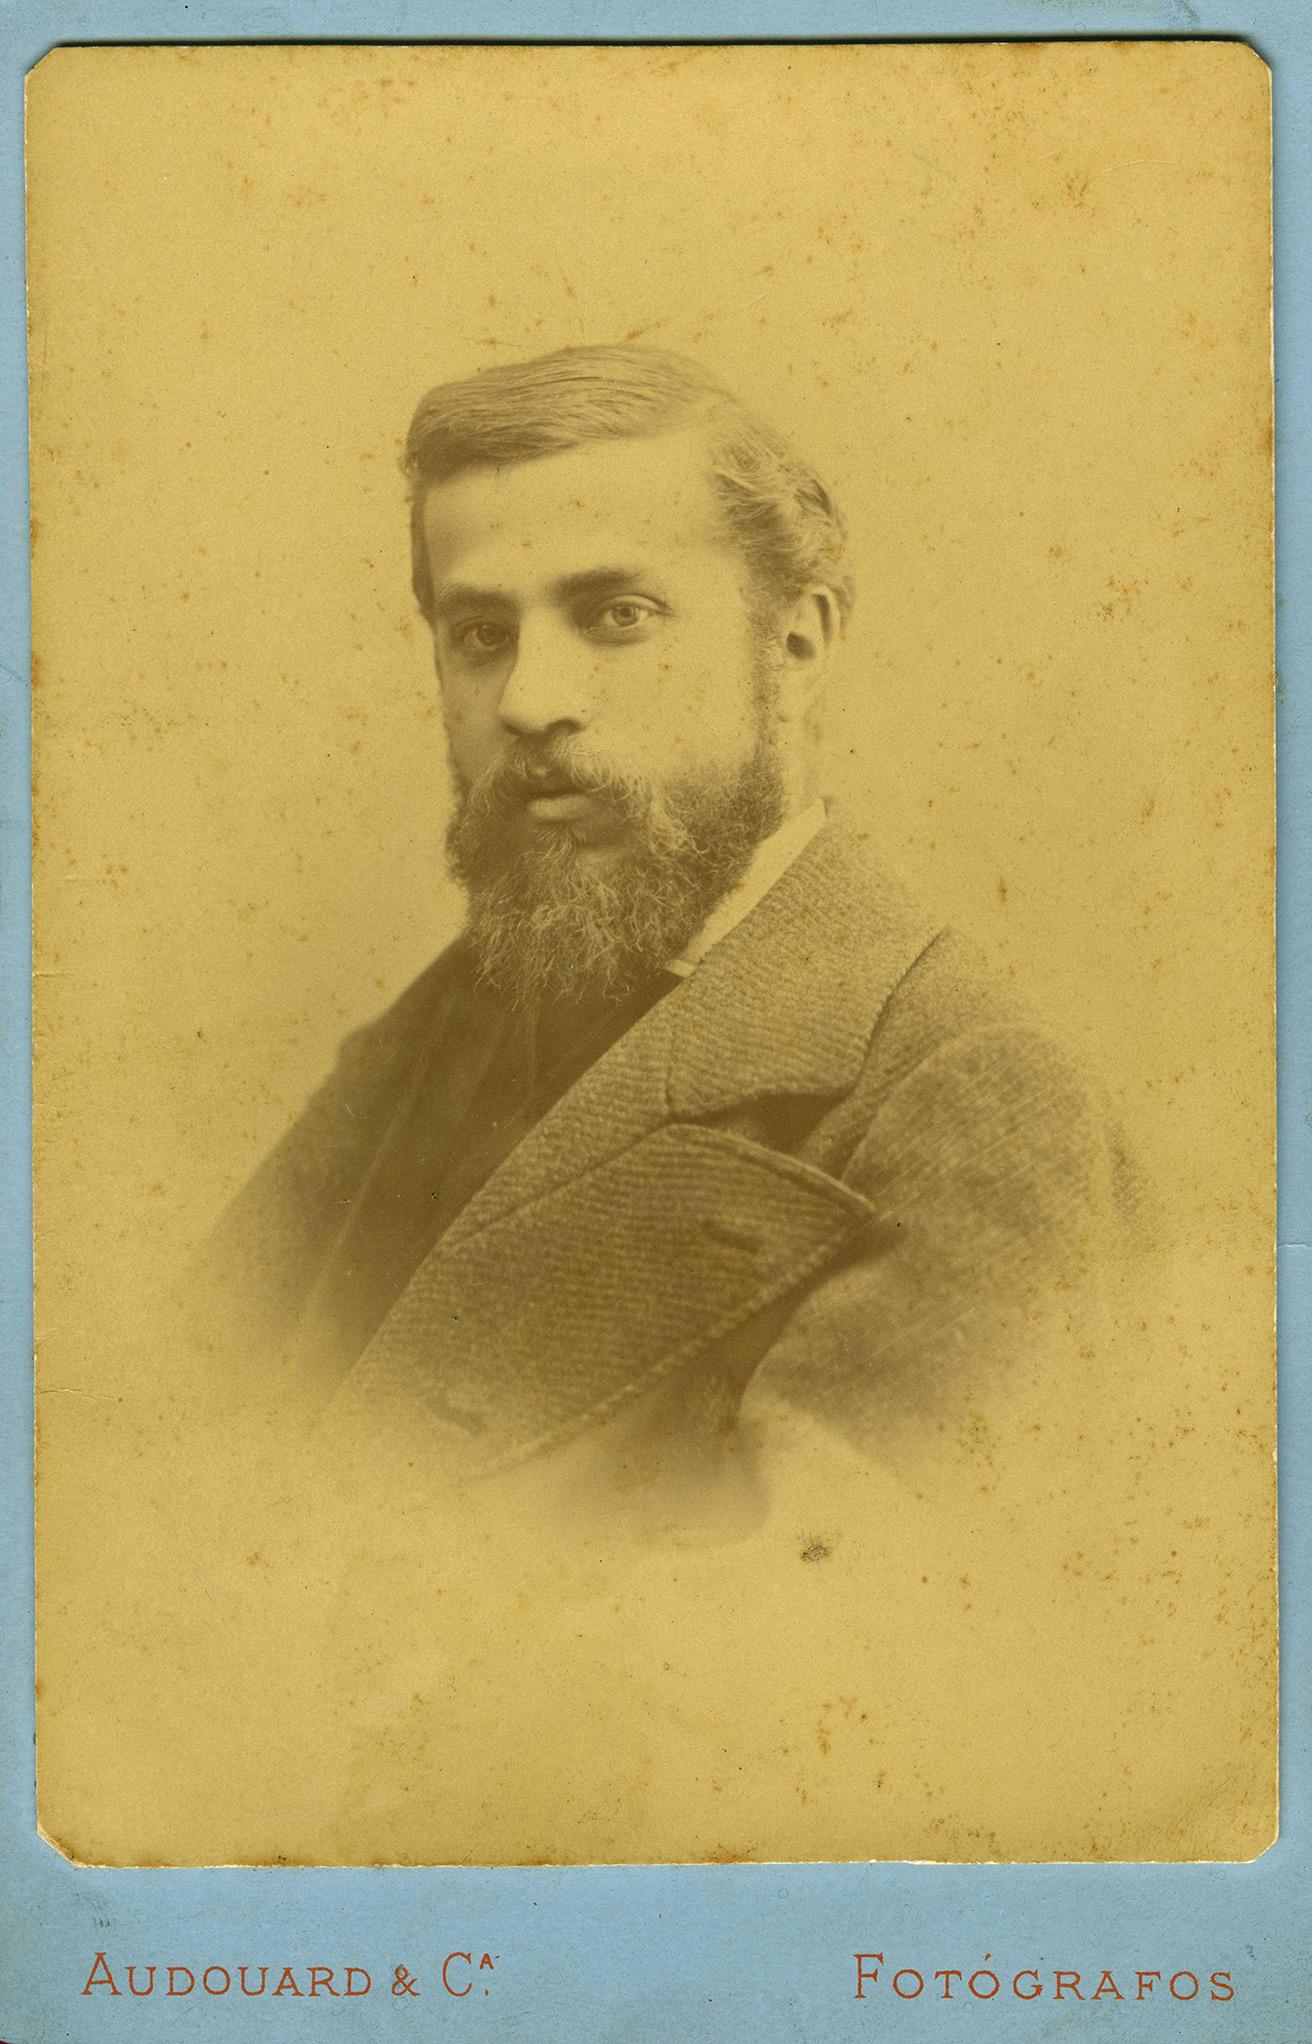 《アントニ・ガウディ肖像写真》1878年頃、レウス市博物館。